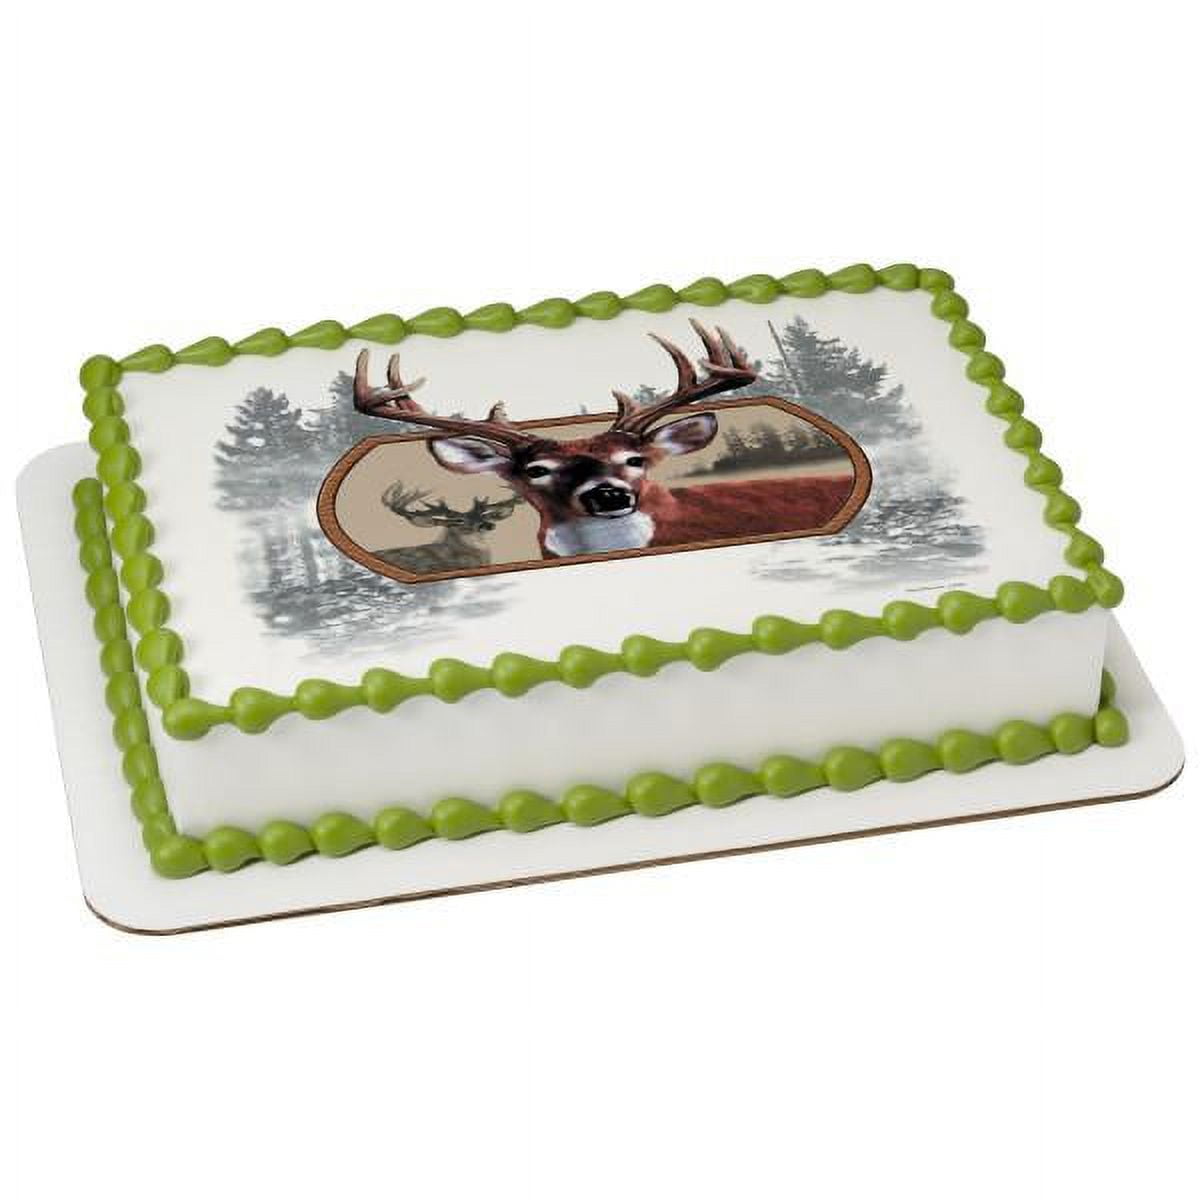 Deer Cakes Birthday